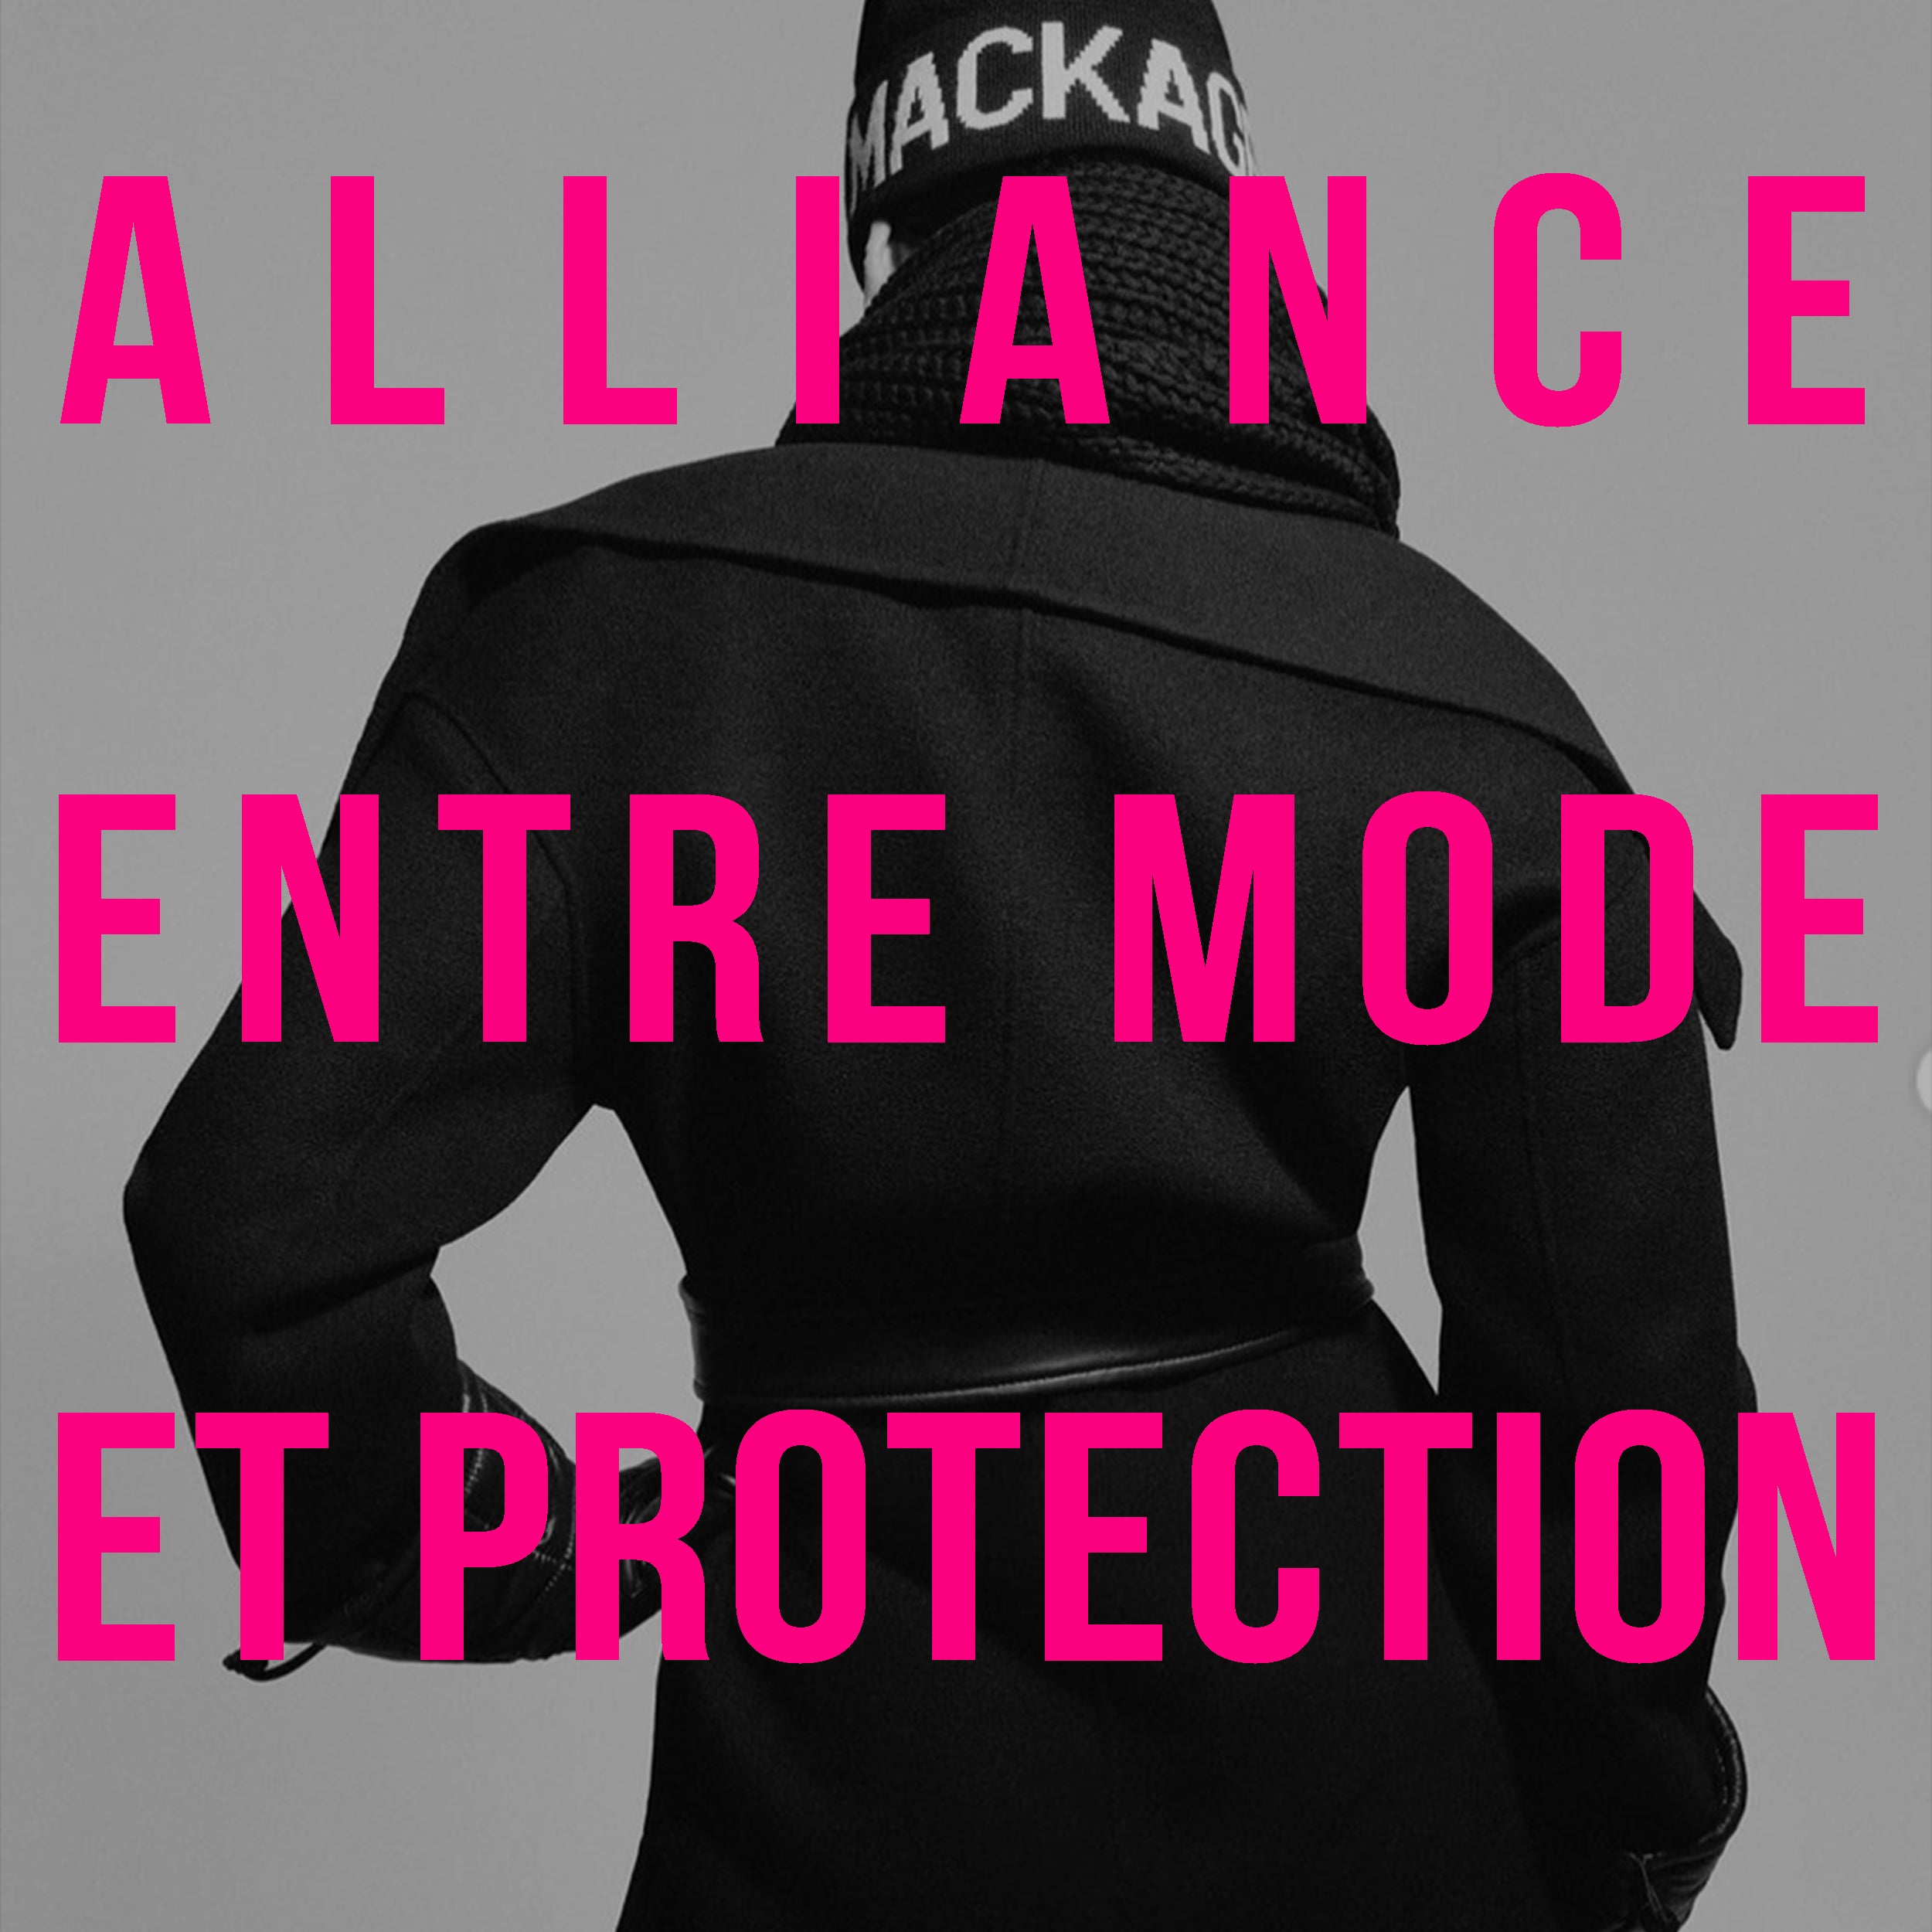 Mackage : alliance entre mode et protection